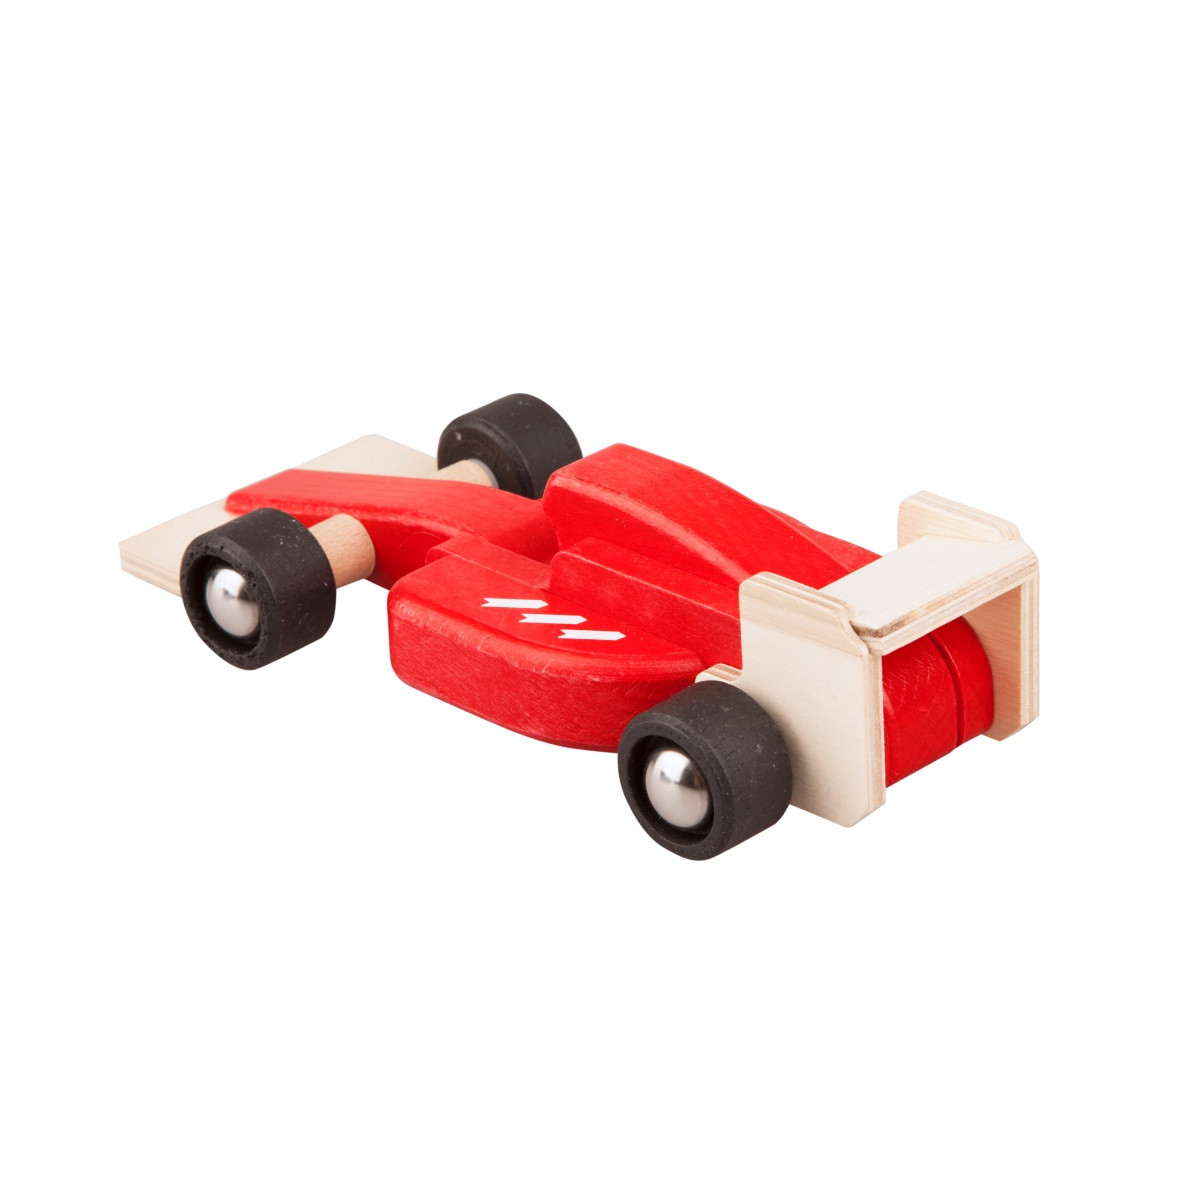 Une Voiture De Formule 1 Miniature Sur Table